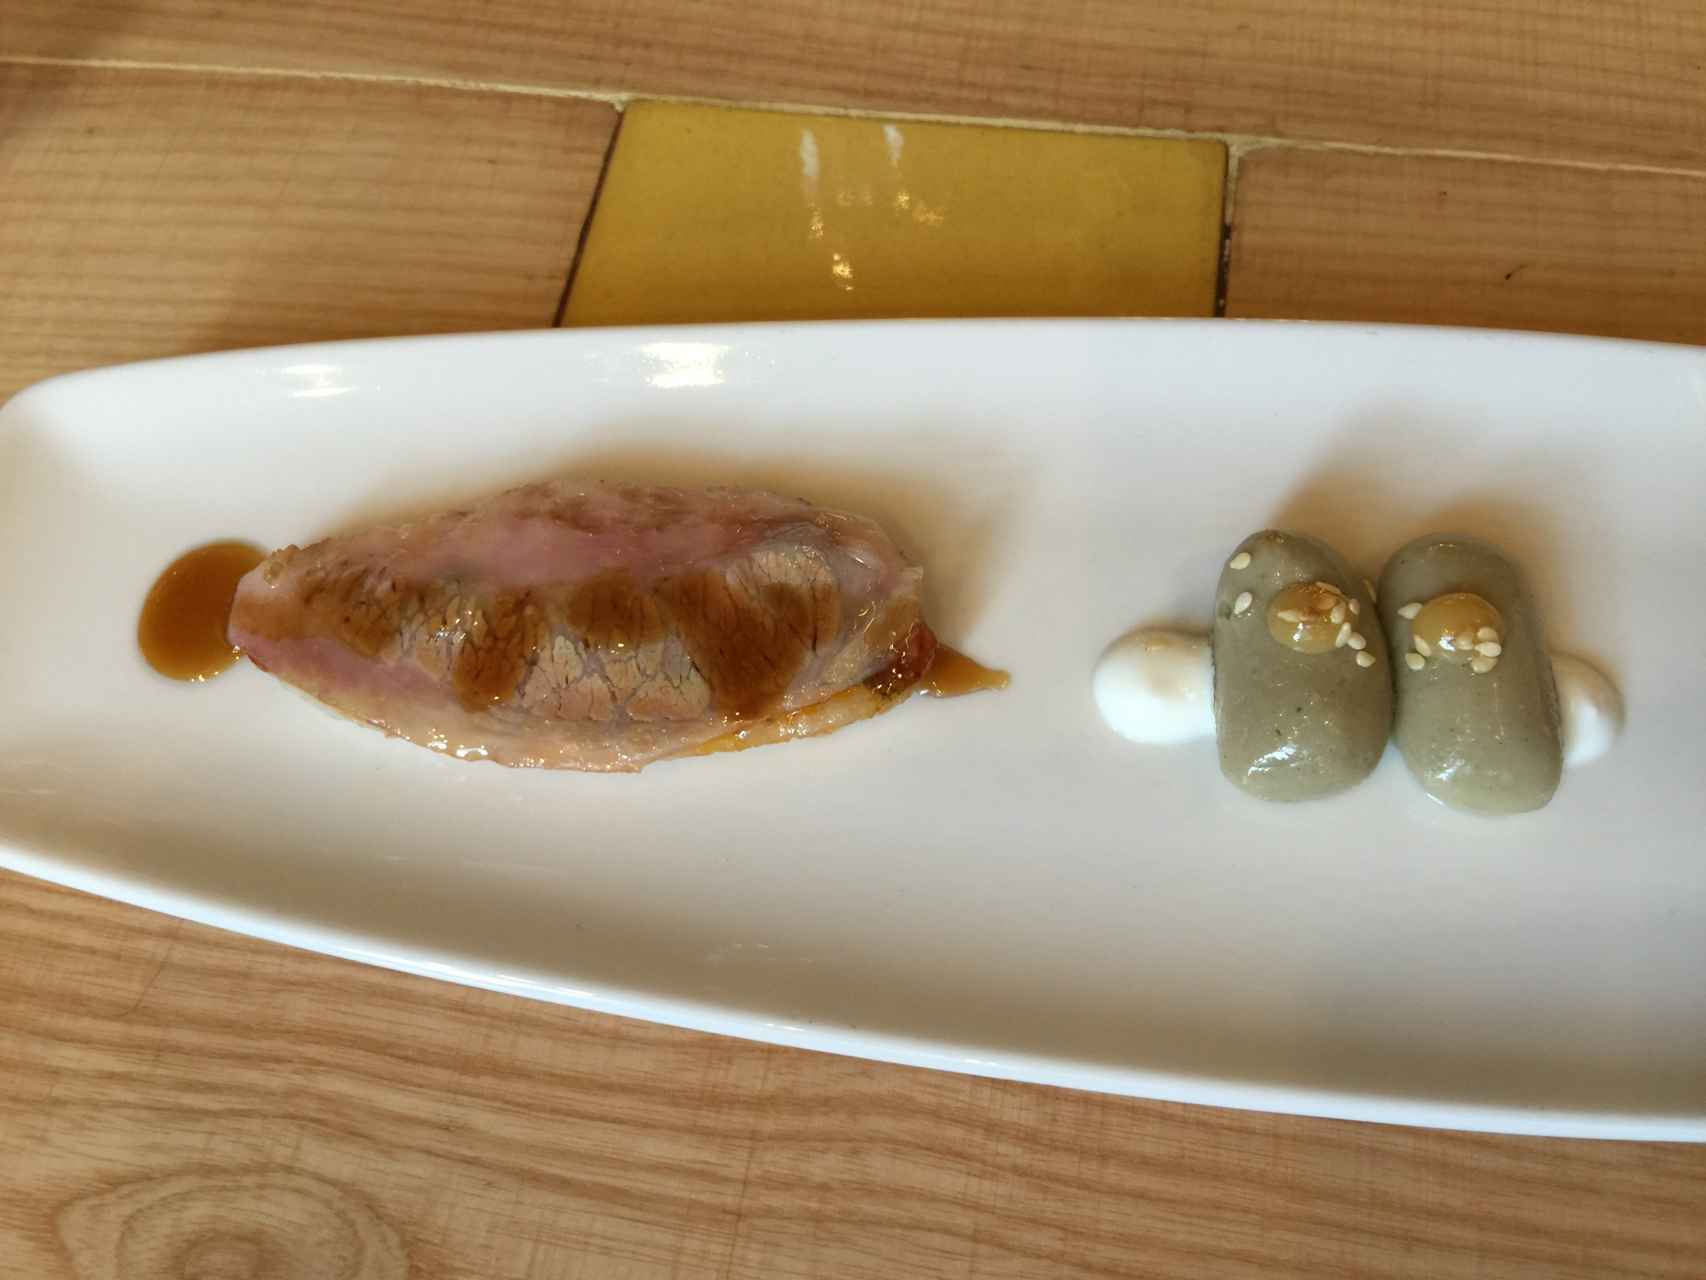 El salmonete con papada y ñoquis de berenjena.